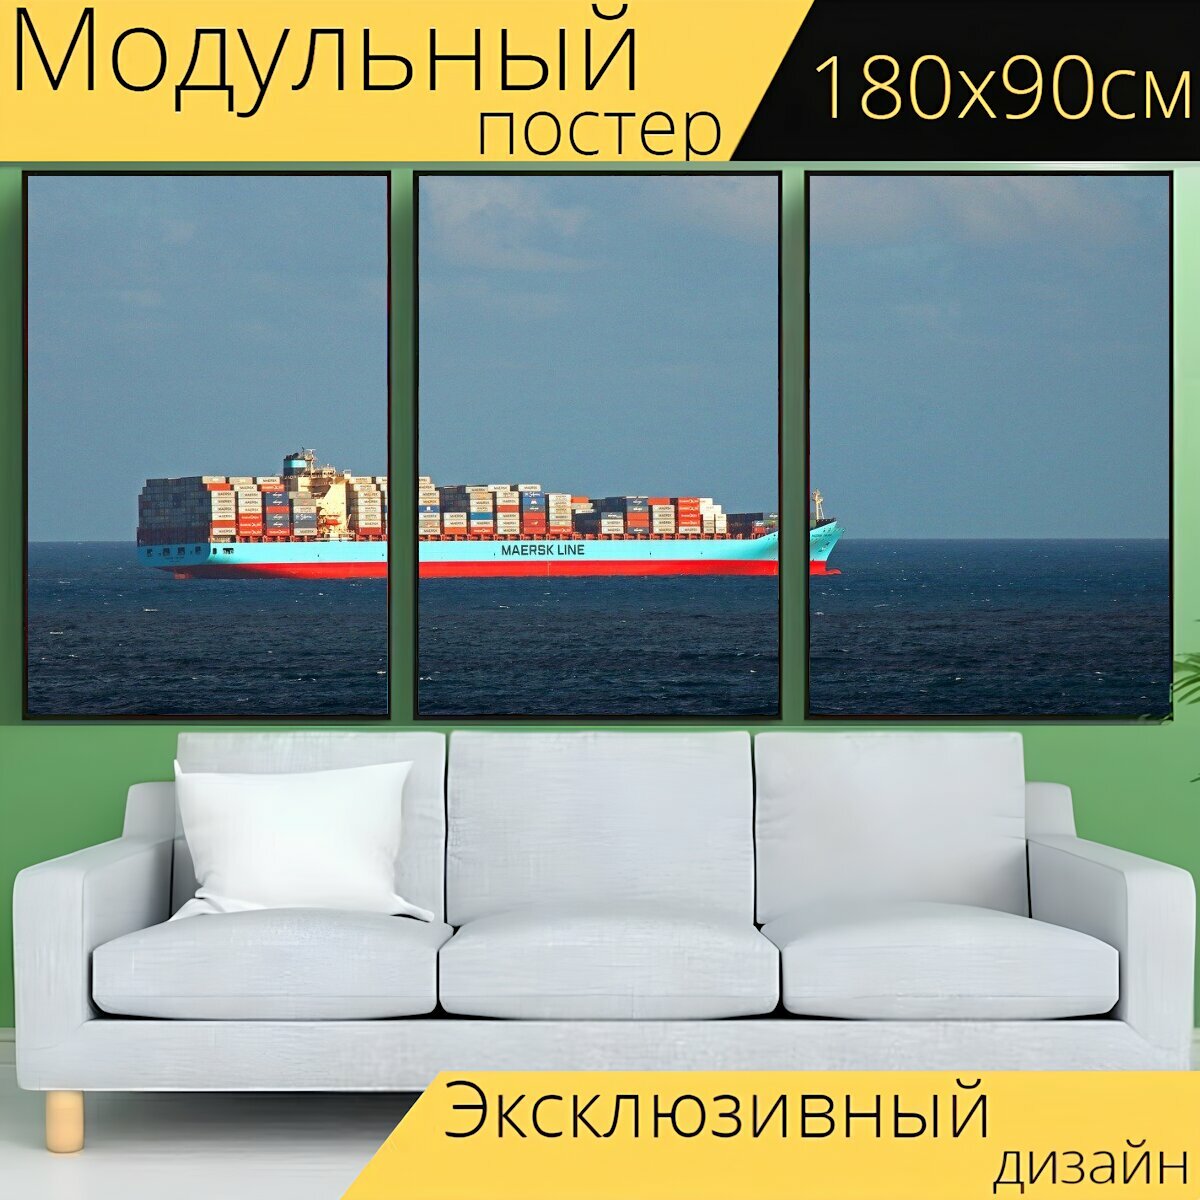 Модульный постер "Контейнер корабль на море, море, океан" 180 x 90 см. для интерьера